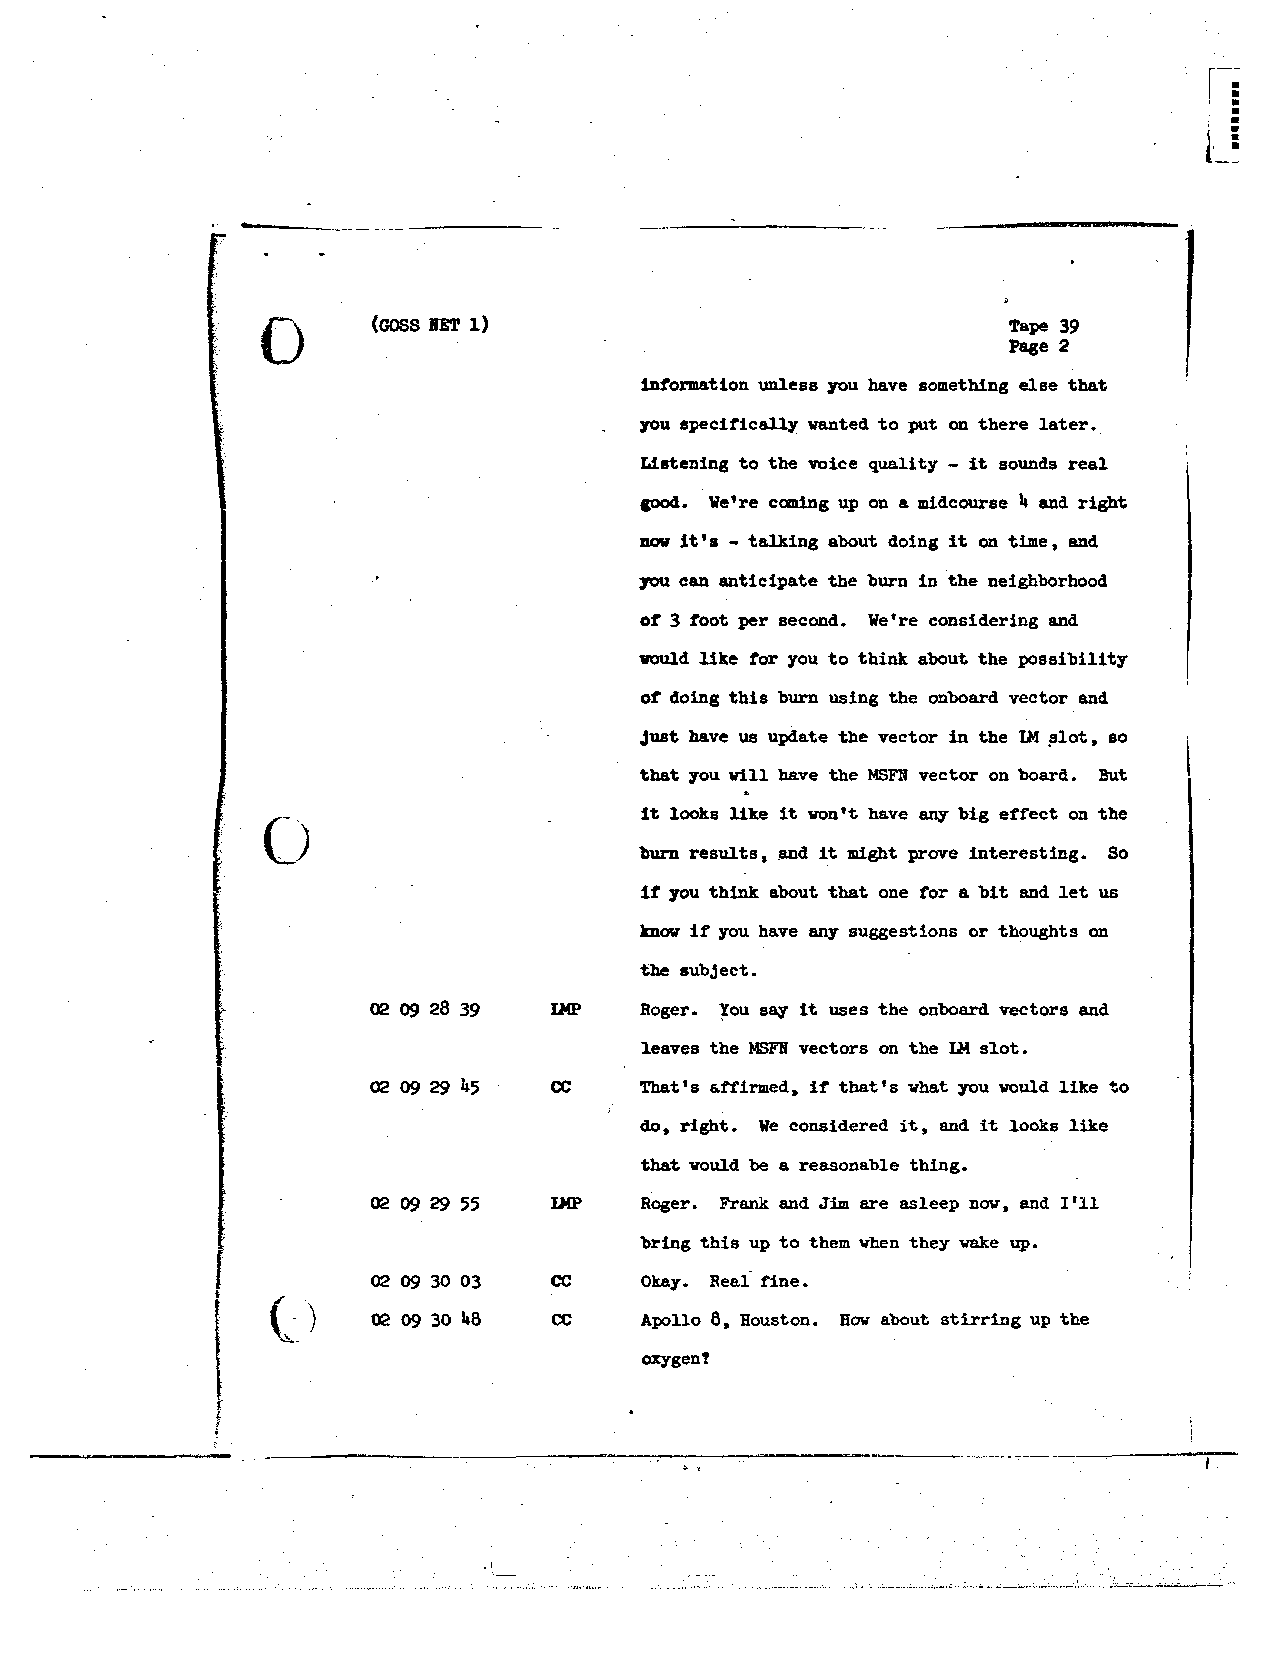 Page 304 of Apollo 8’s original transcript